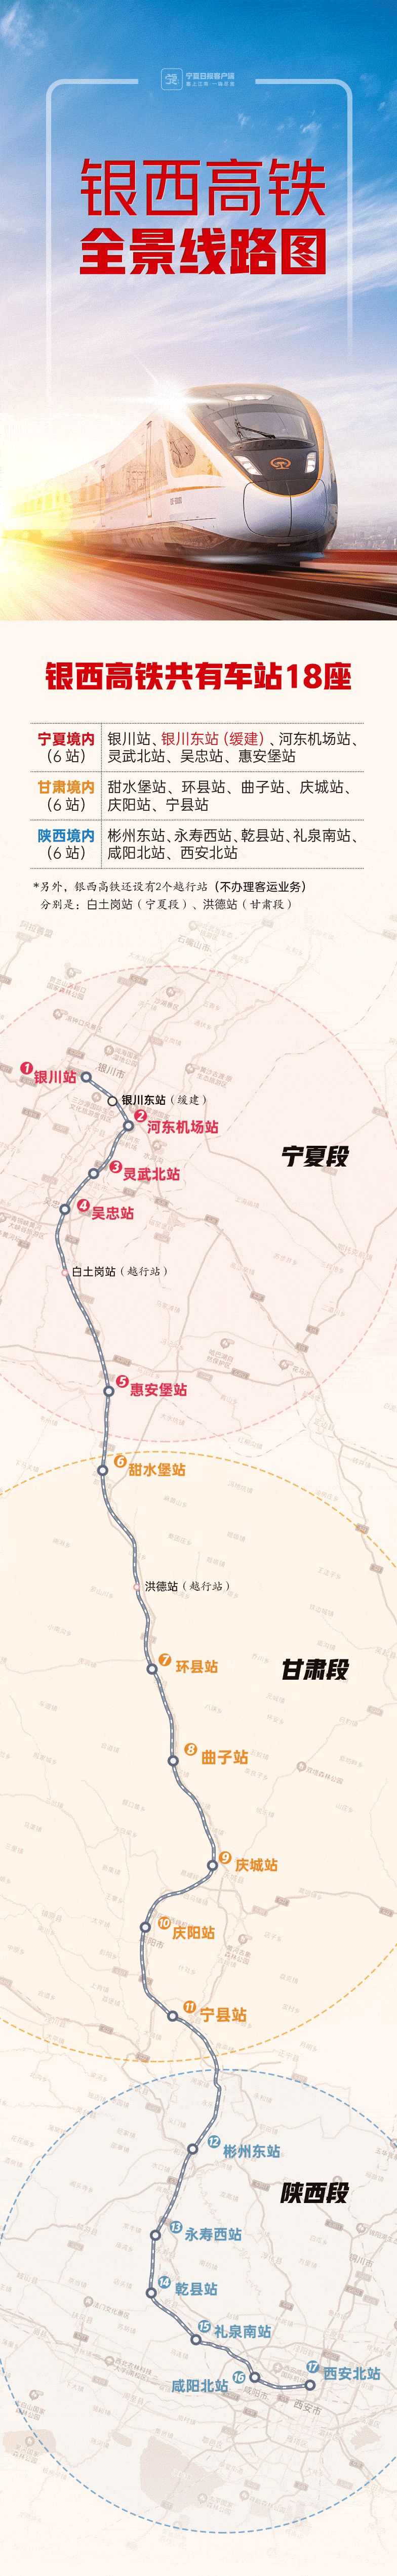 银西高铁票价公布 庆阳站至西安北站149元